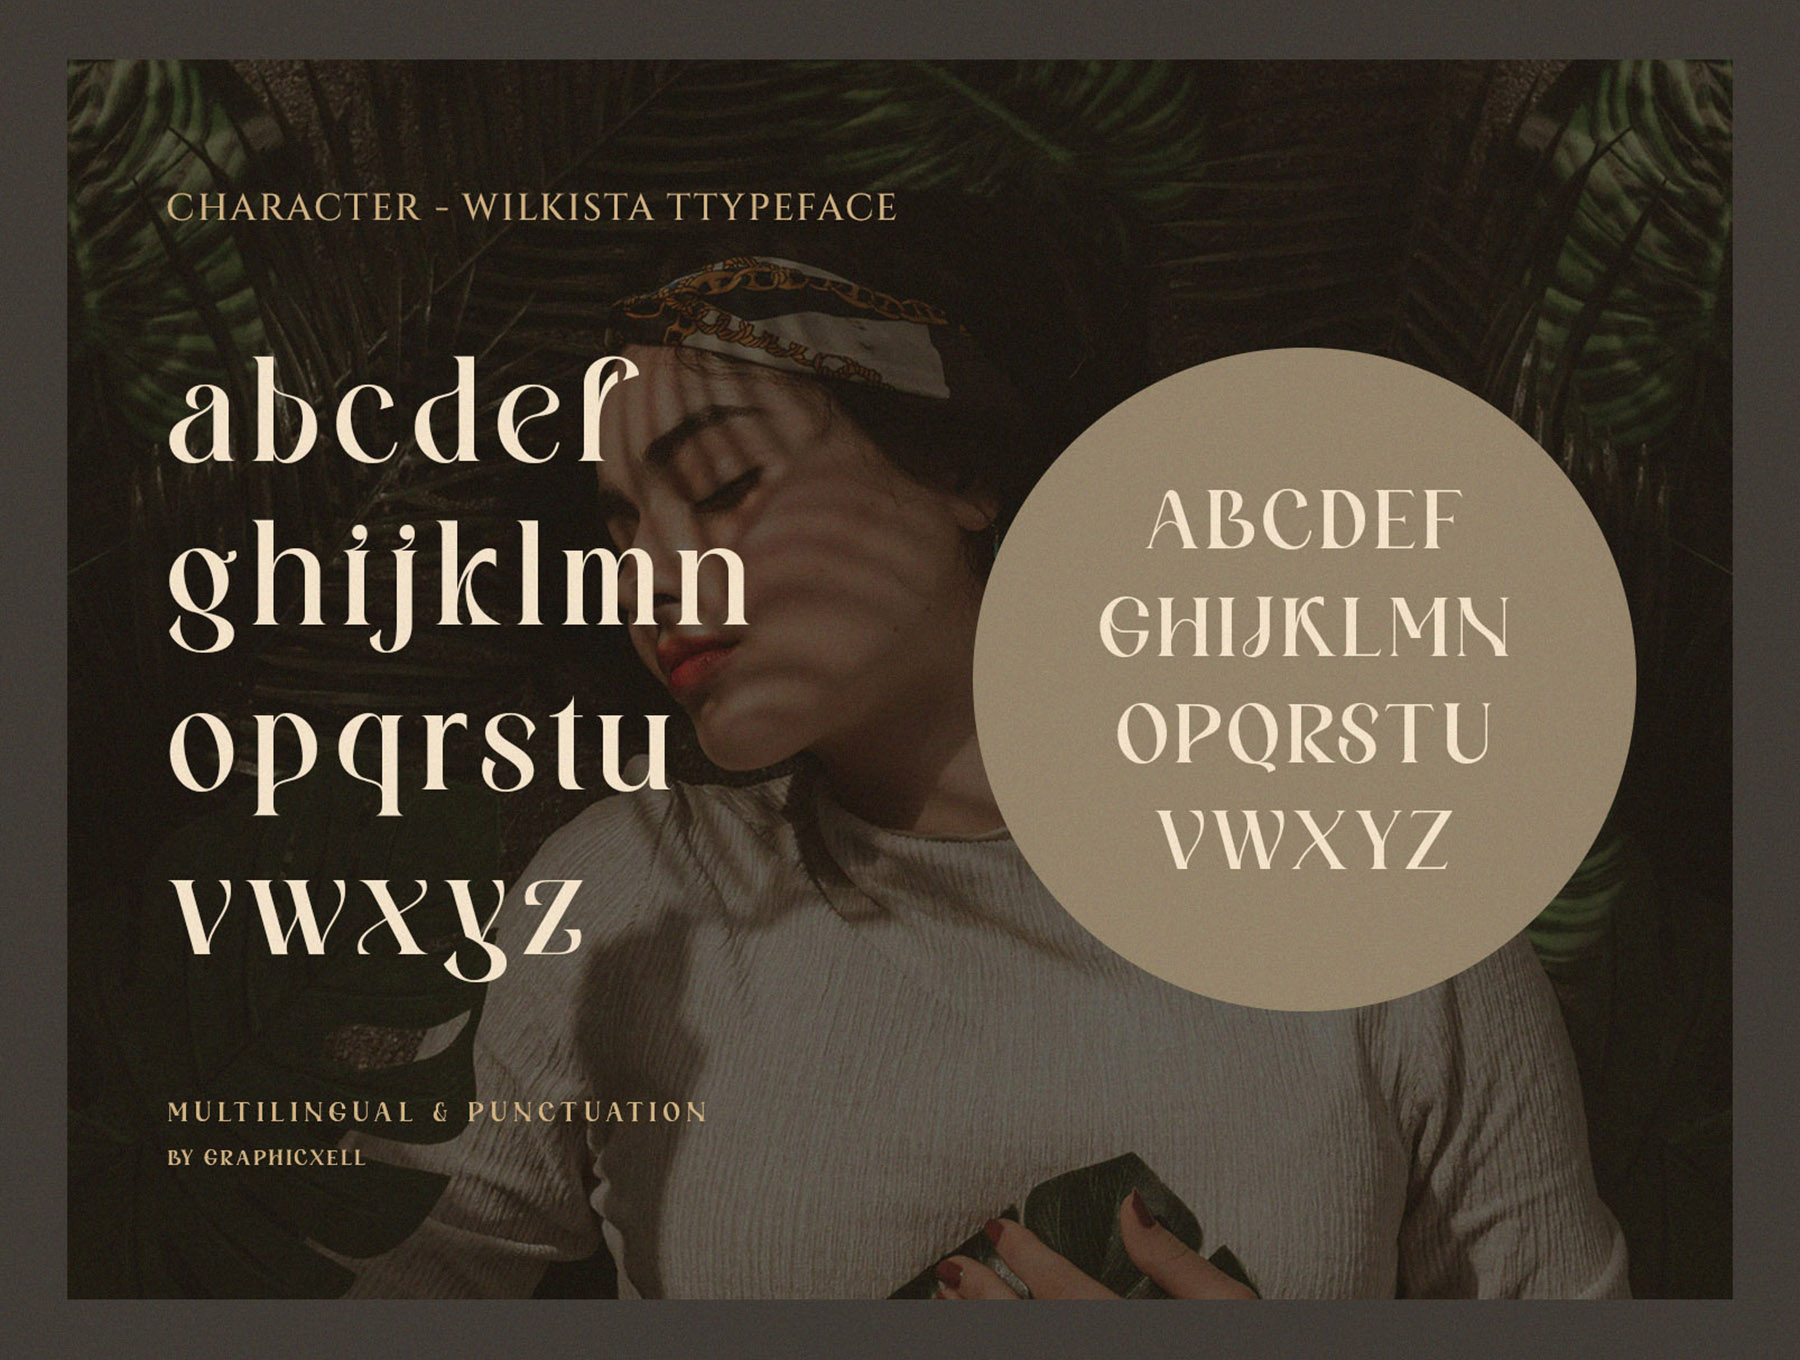 1155 复古英文装饰艺术字体 Wilkista – Stylish Ligature Typeface